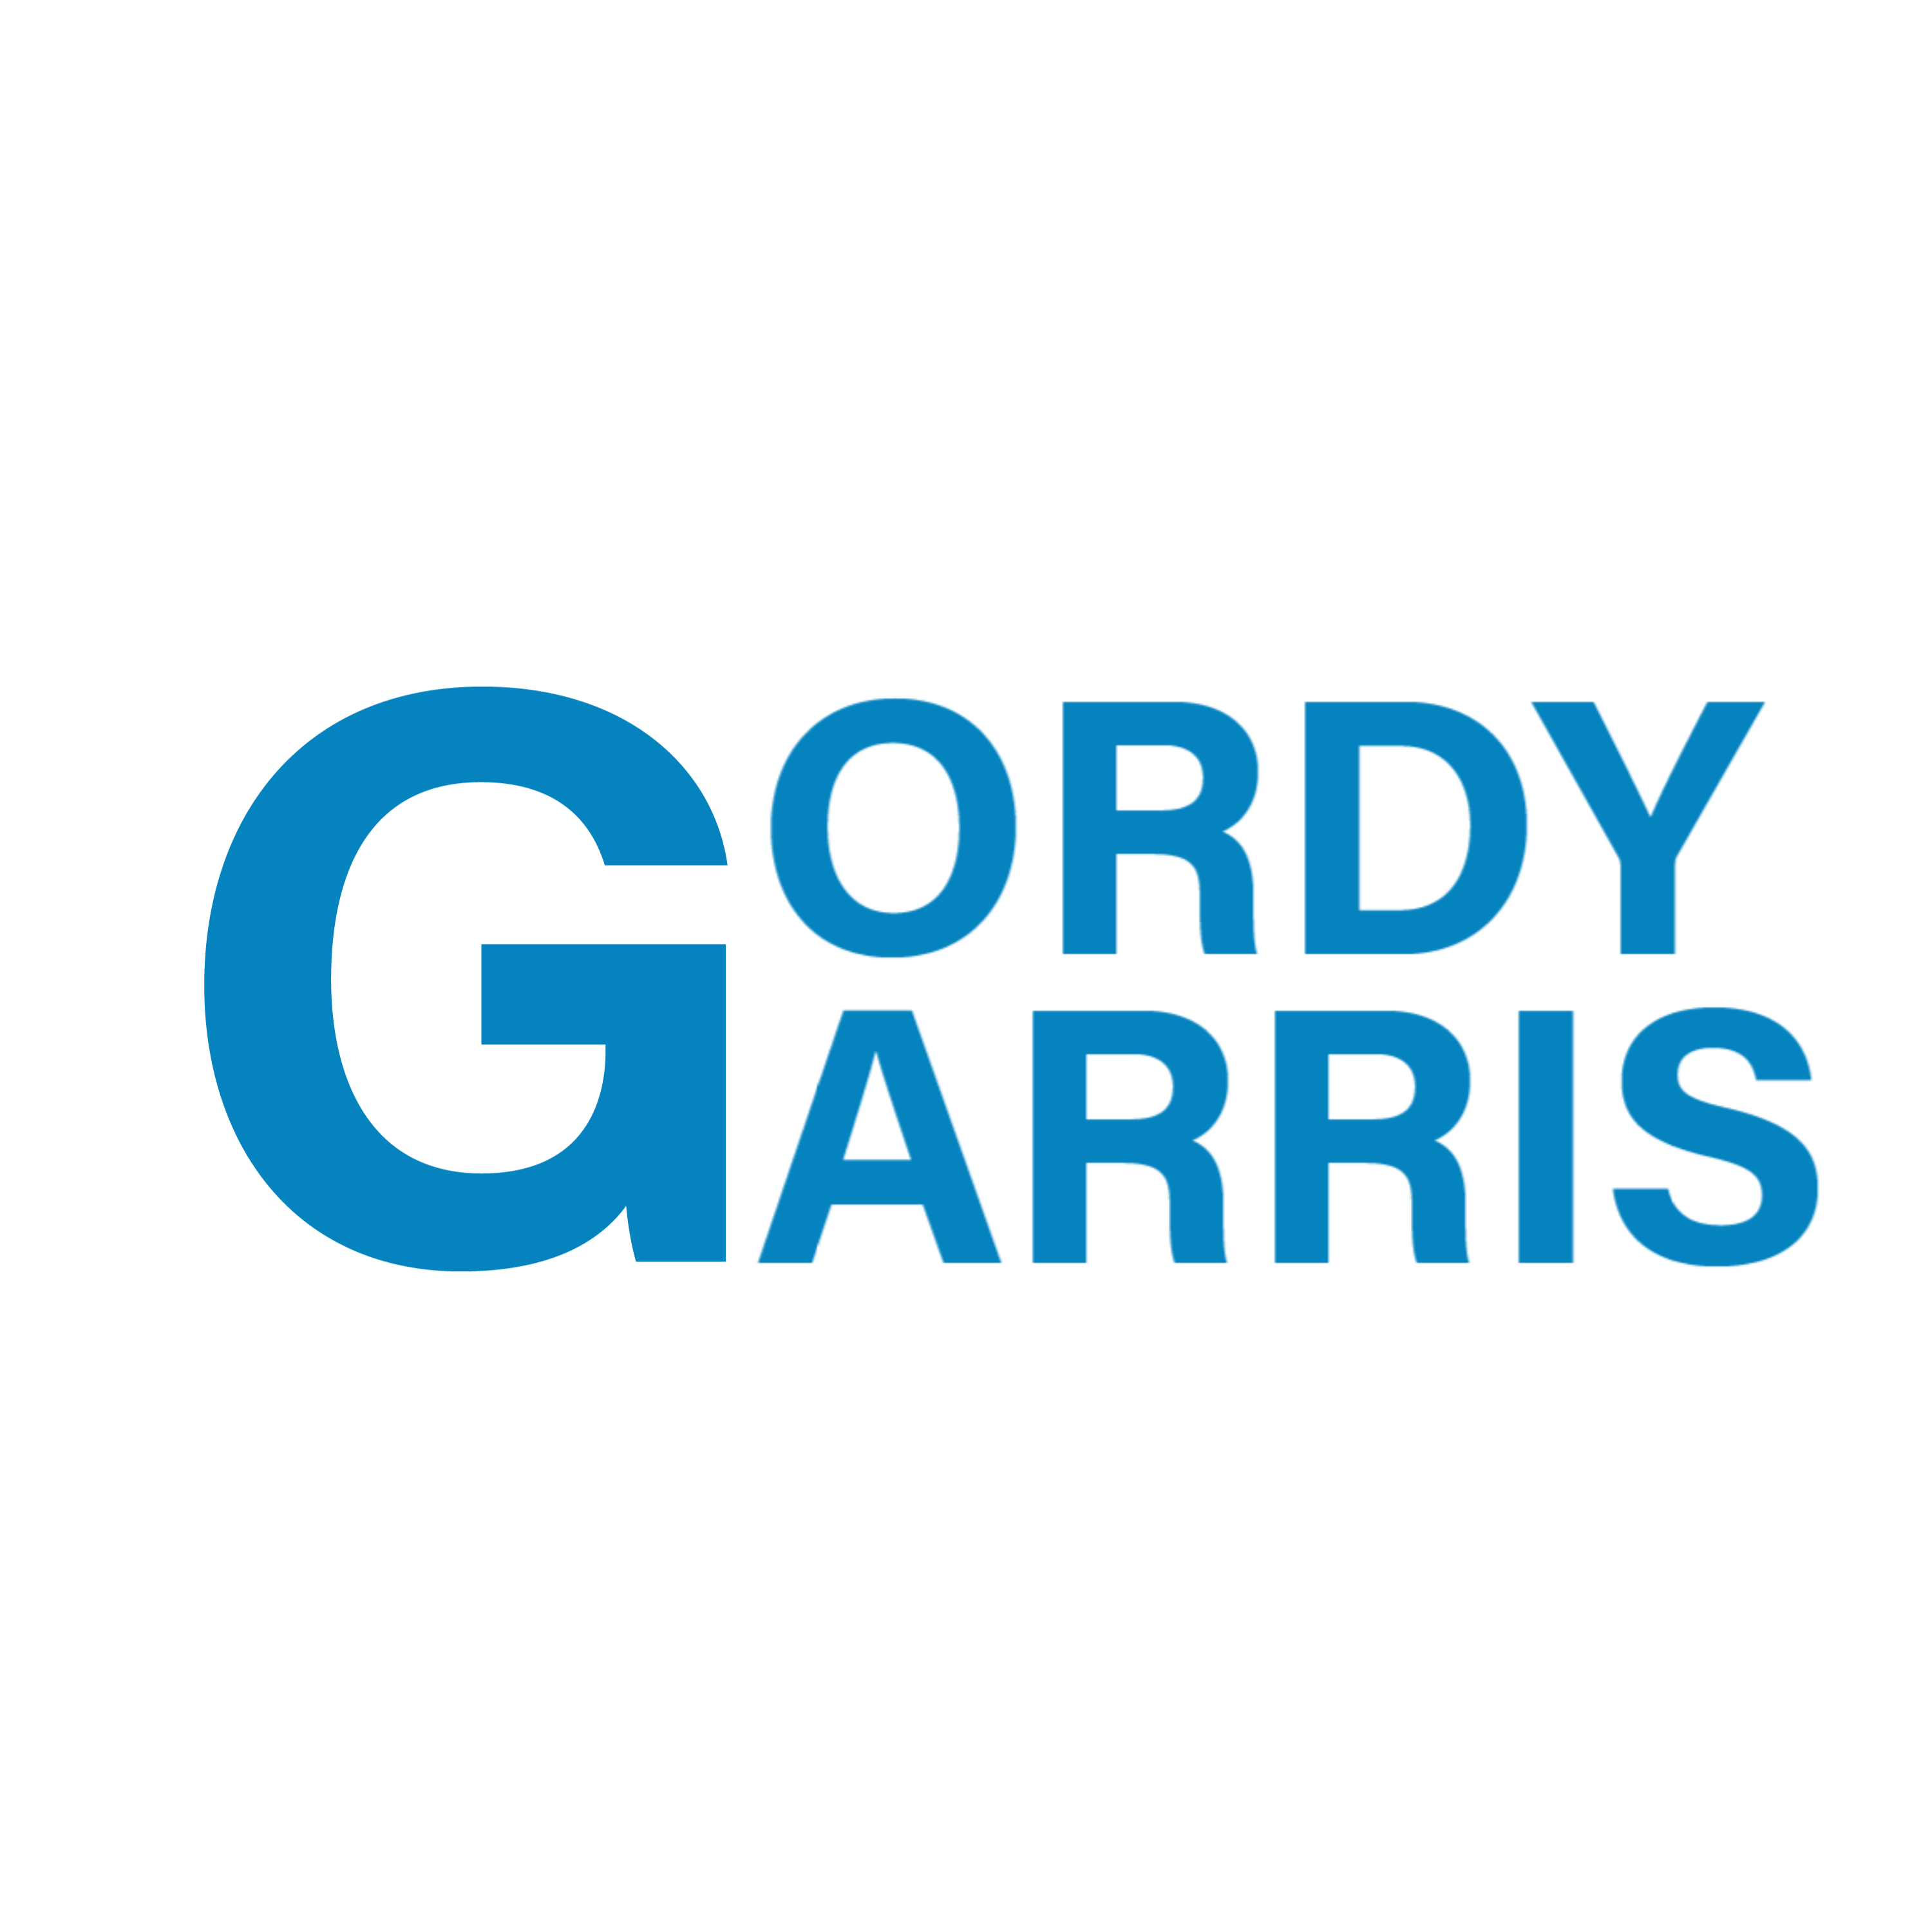 				Gordy Garris		